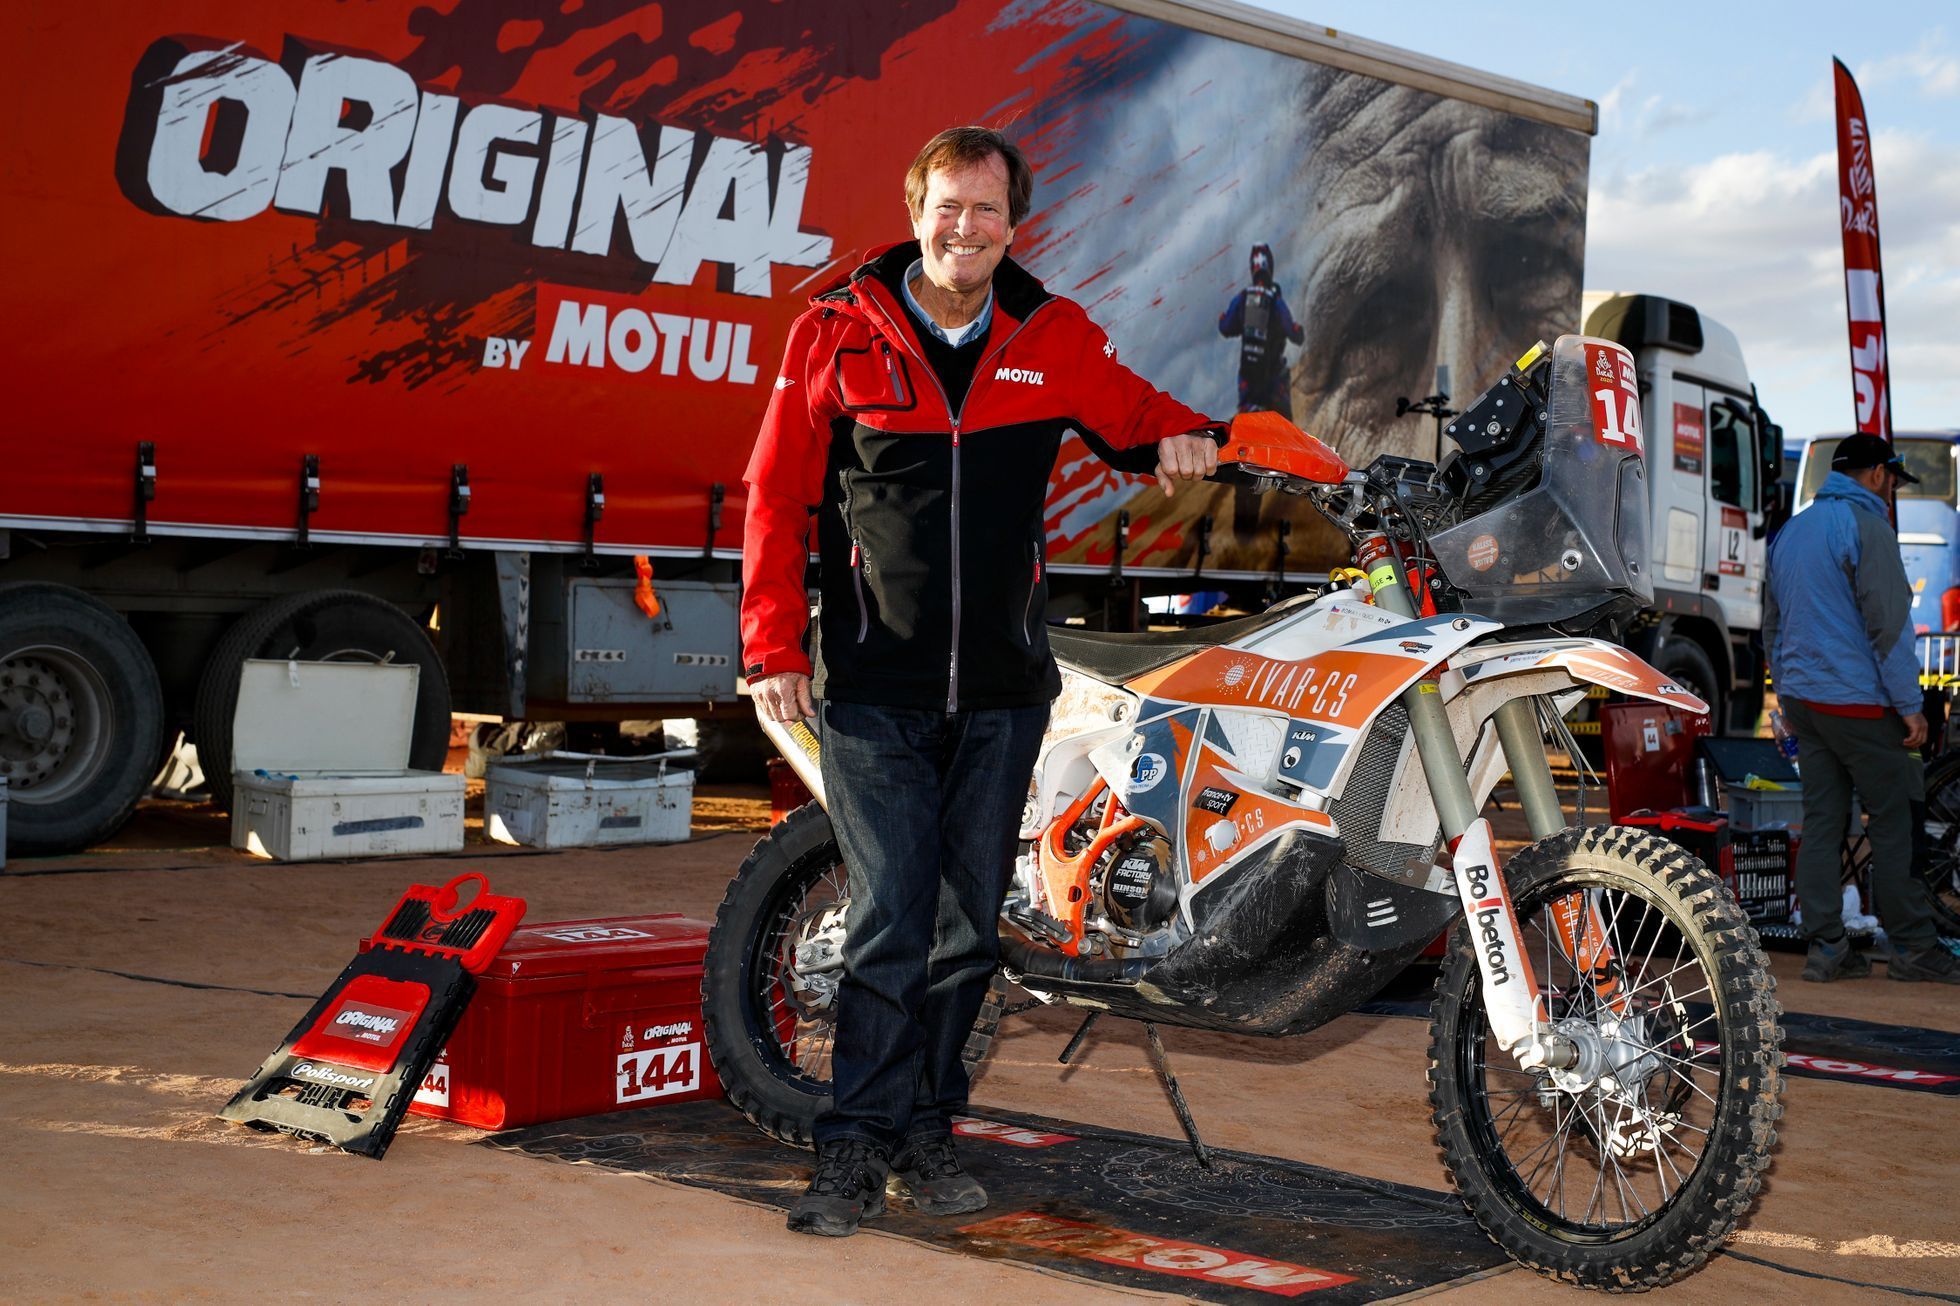 Hubert Auriol pózuje s motocyklem českého jezdce Romana Krejčího na Rallye Dakar 2020